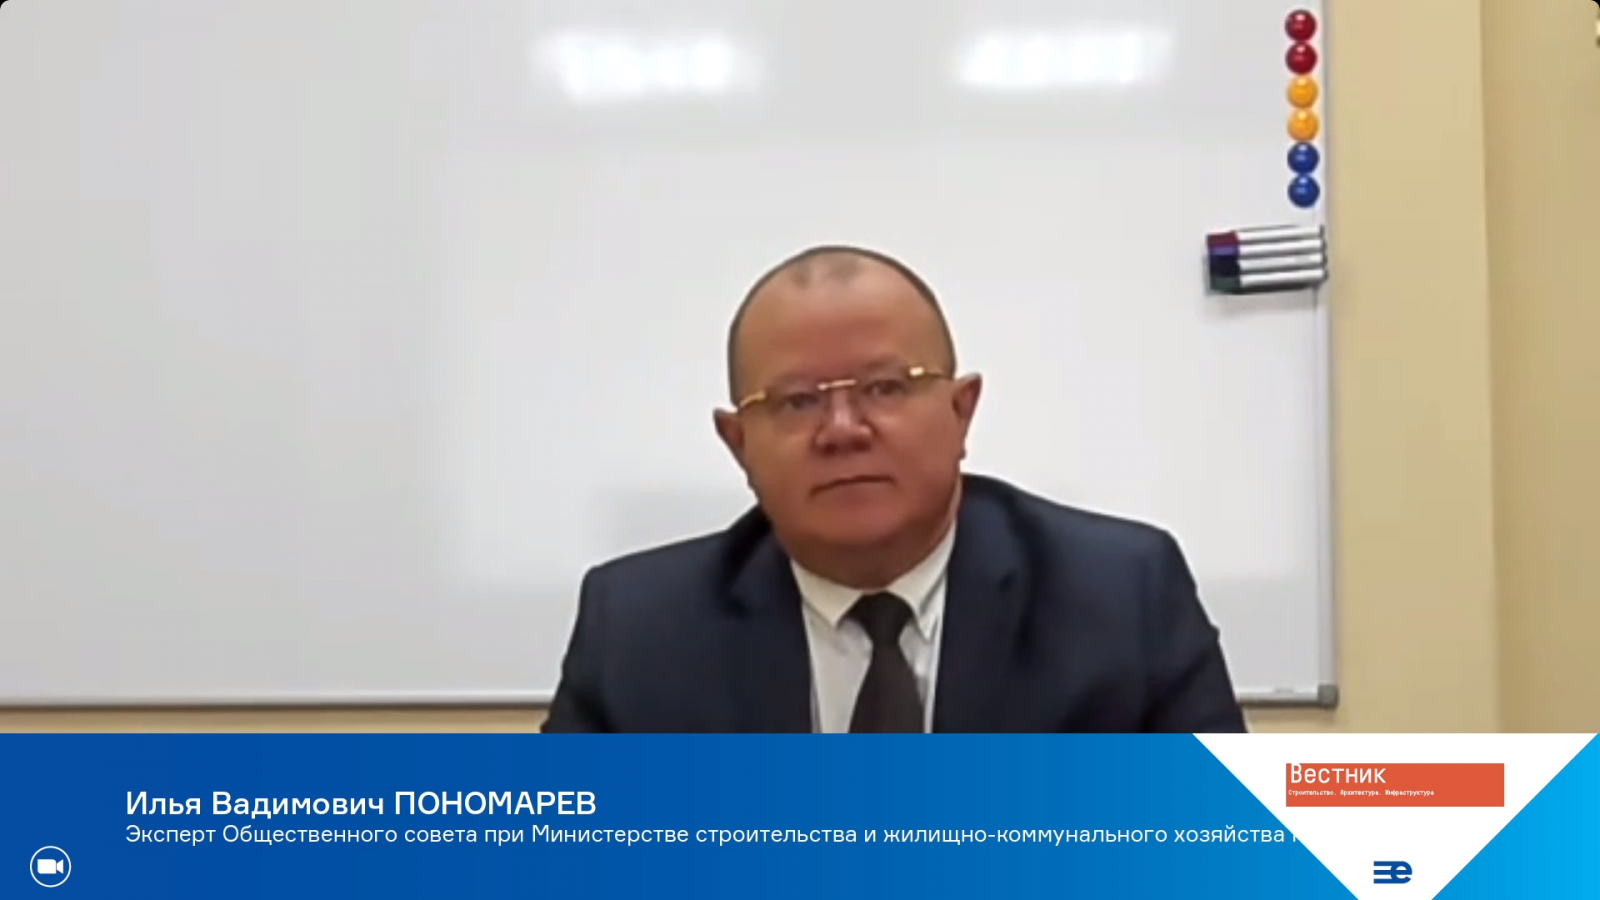 Илья Пономарев: «Строительство может быть экспортной отраслью»